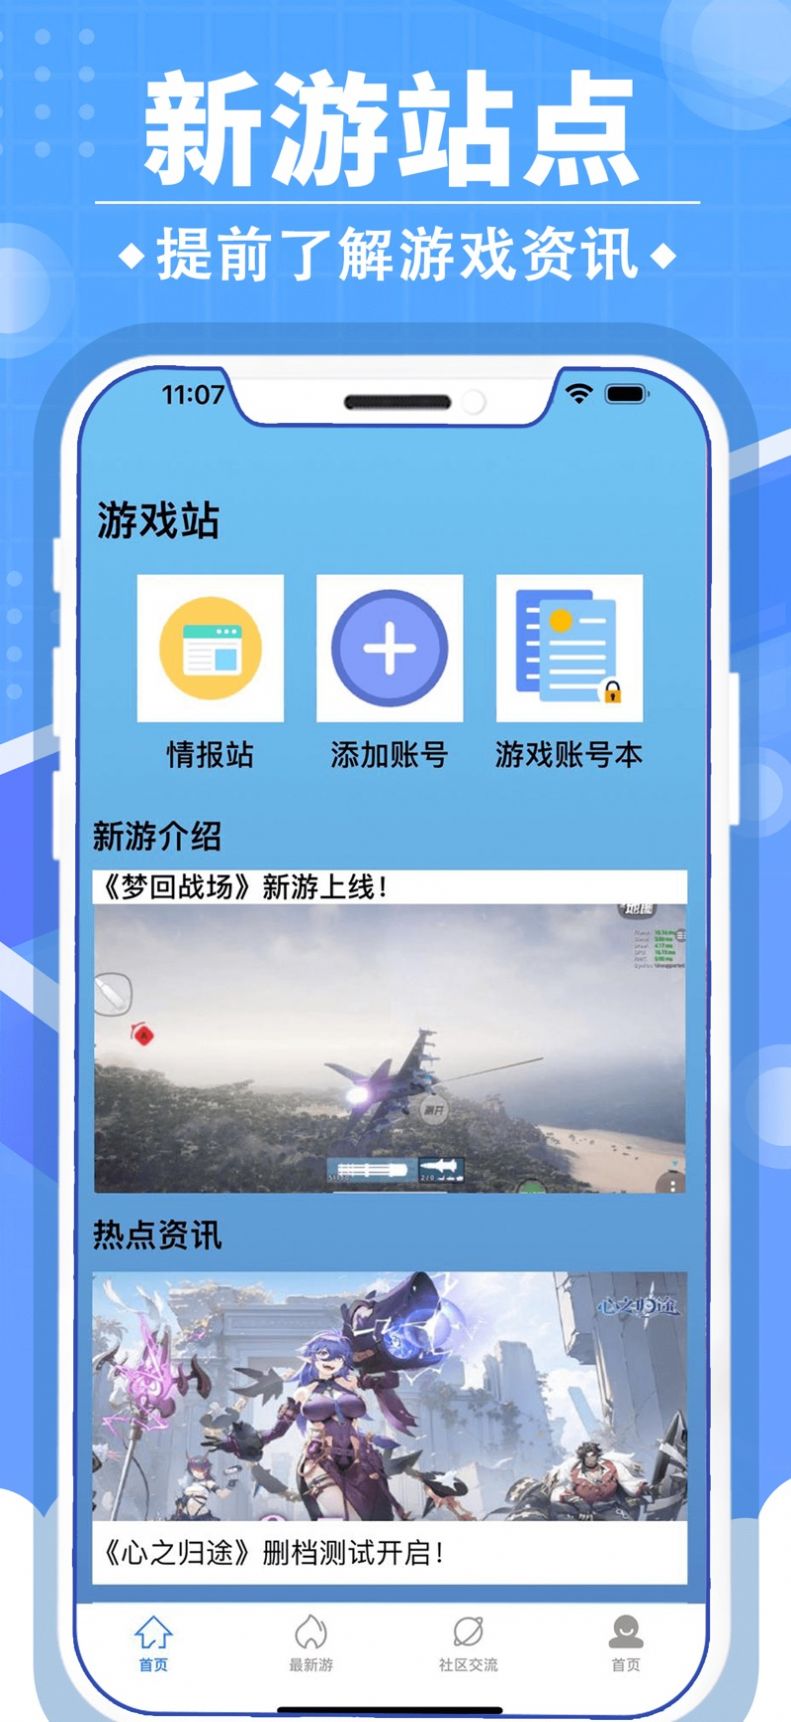 小虎游戏情报站app下载,小虎游戏情报站app官方版 v1.0.0